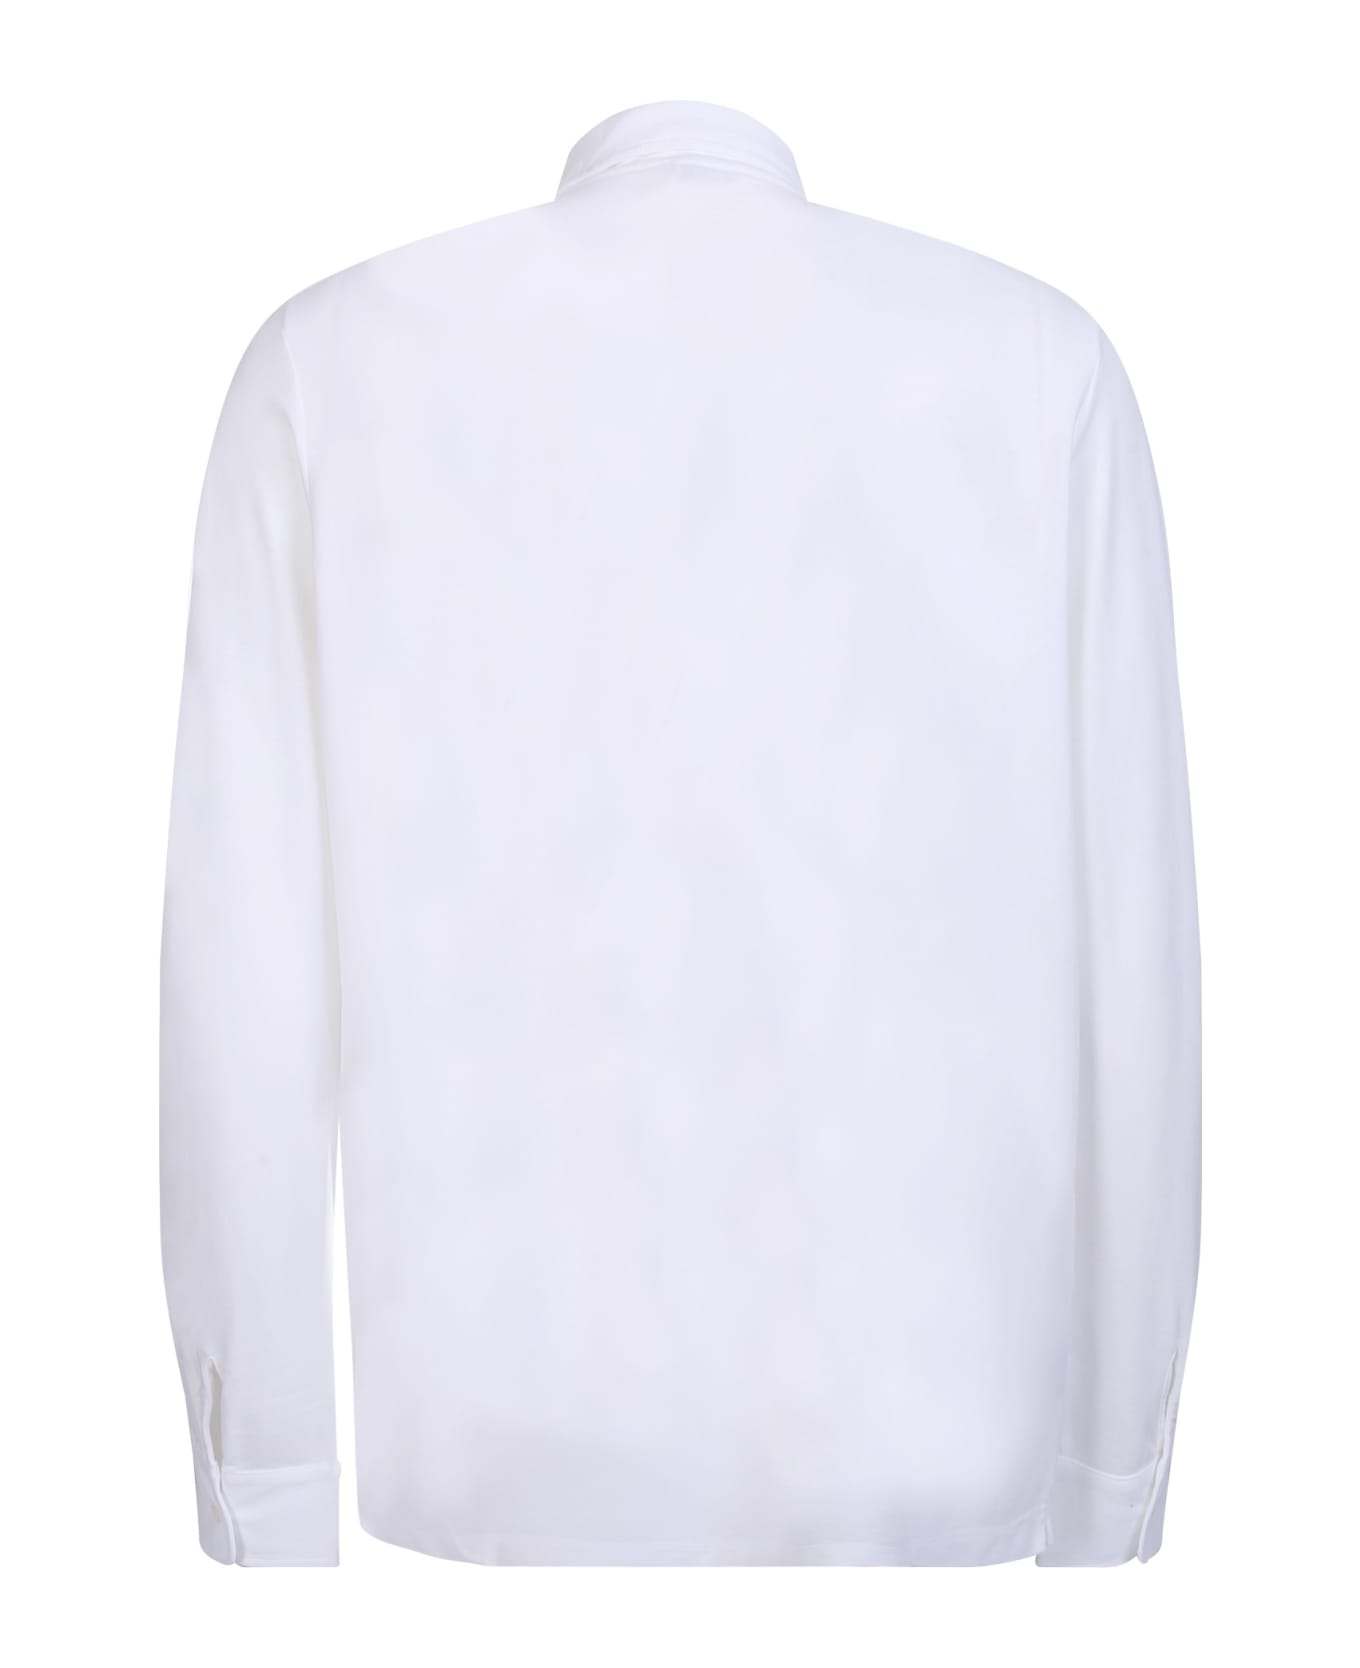 Zanone White Cotton Shirt - White